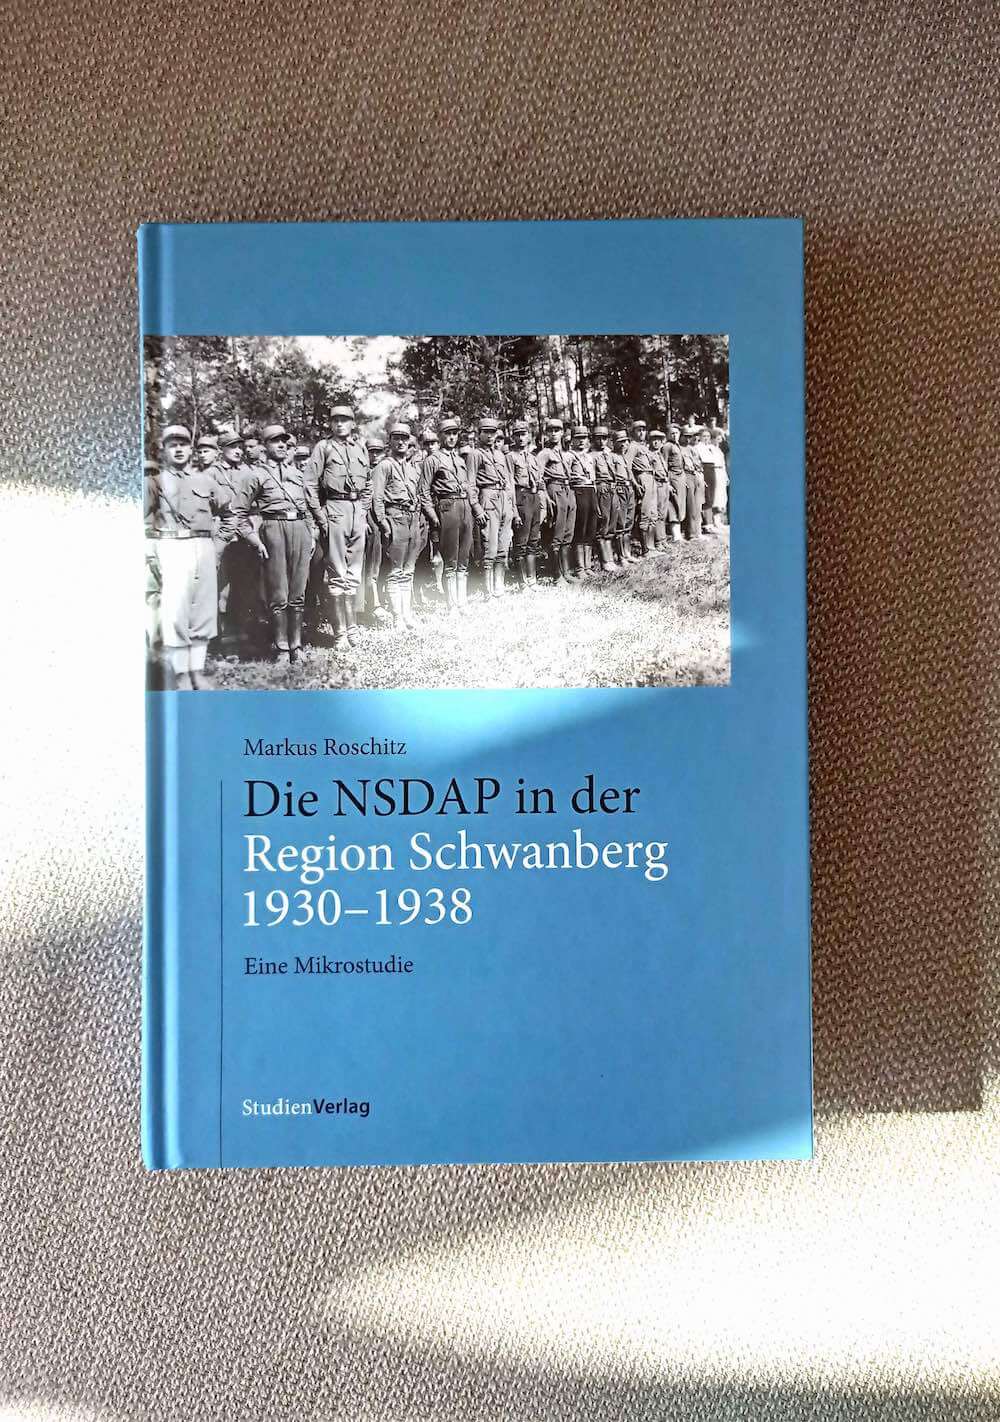 Markus Roschitz: Die NSDAP in der Region Schwanberg (1930-1938)